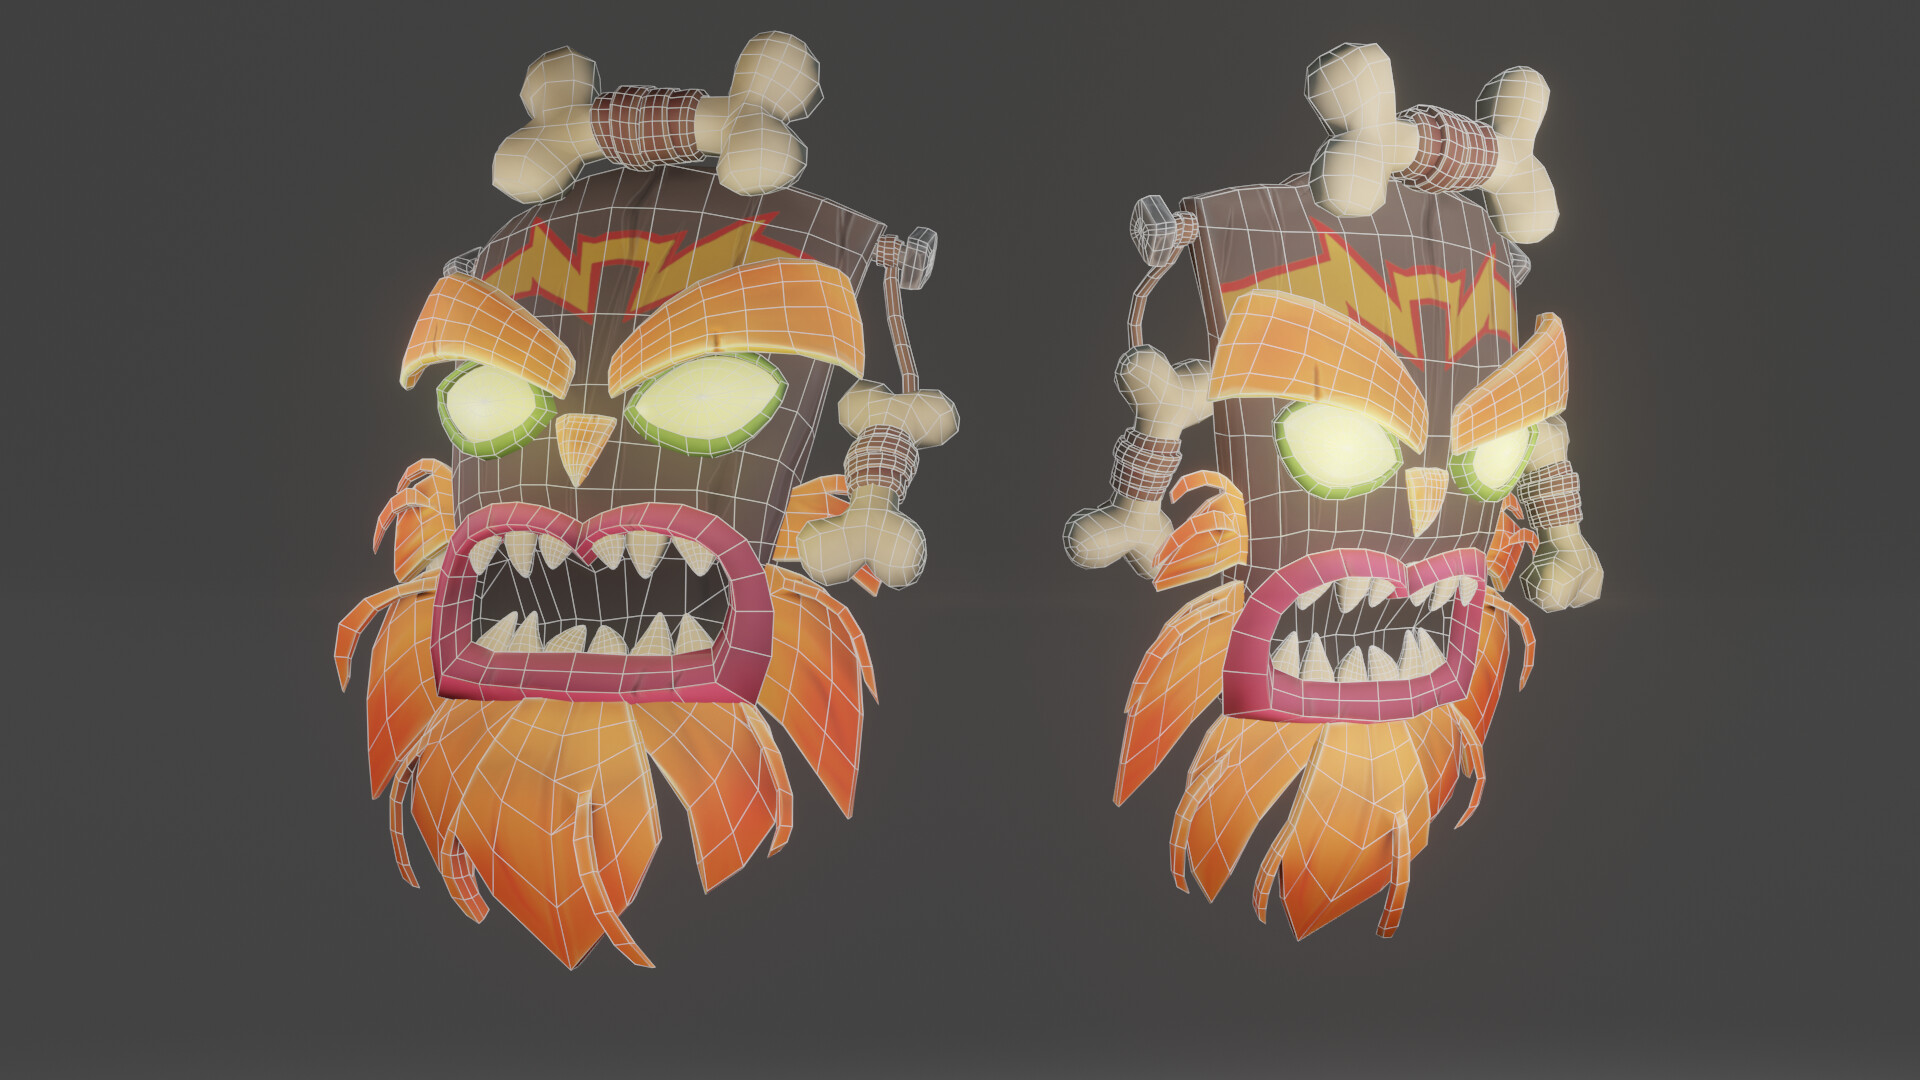 nåde skræmt besøg Uka Uka Mask (Crash Bandicoot) - 3D model by P3D (@p3d_avilla) [09efaf3]